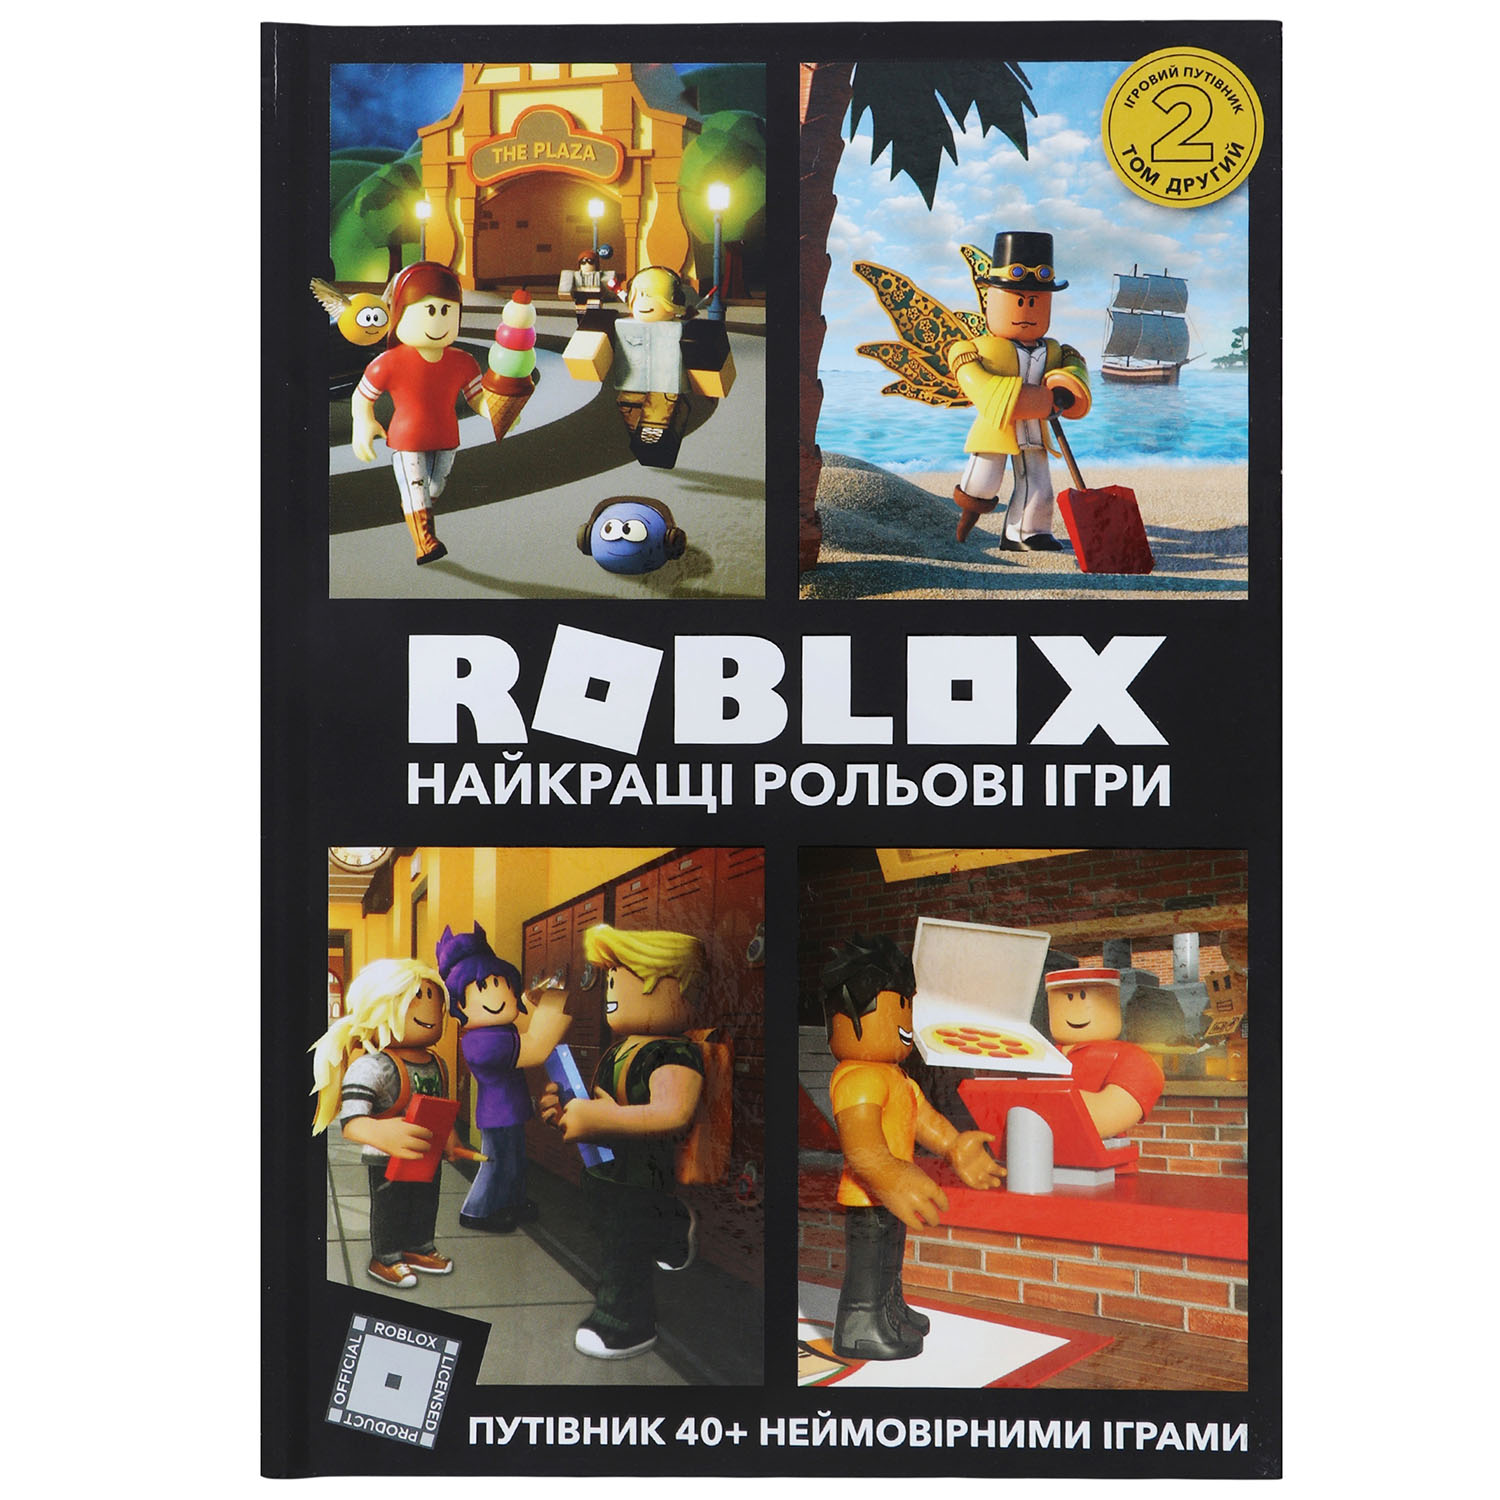 Roblox Найкращі рольові ігри - Алекс Вілтшир Крейг Джеллі (9786177688548) - фото 1